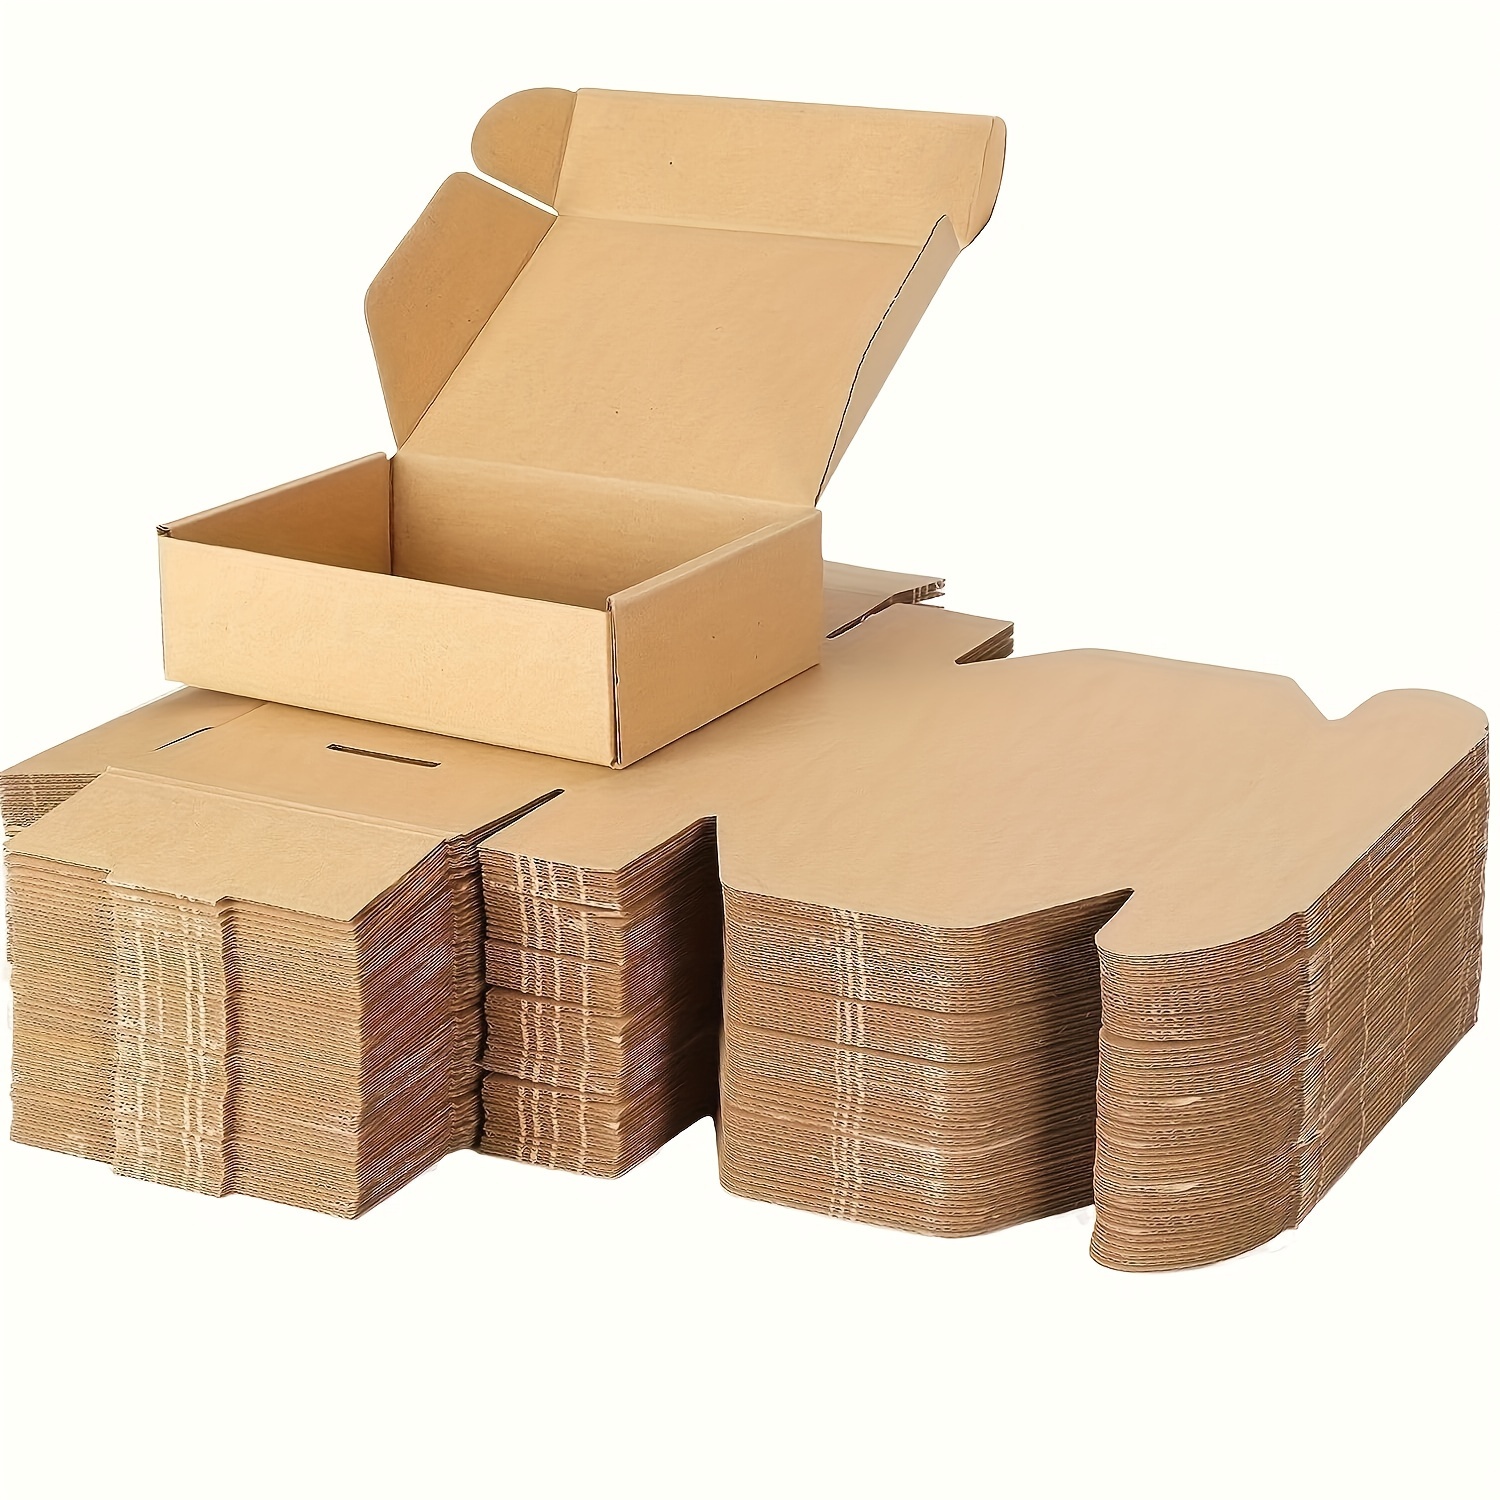 Cajas de cartón de regalo marrón 30 x 23 x 11 cm 10 piezas